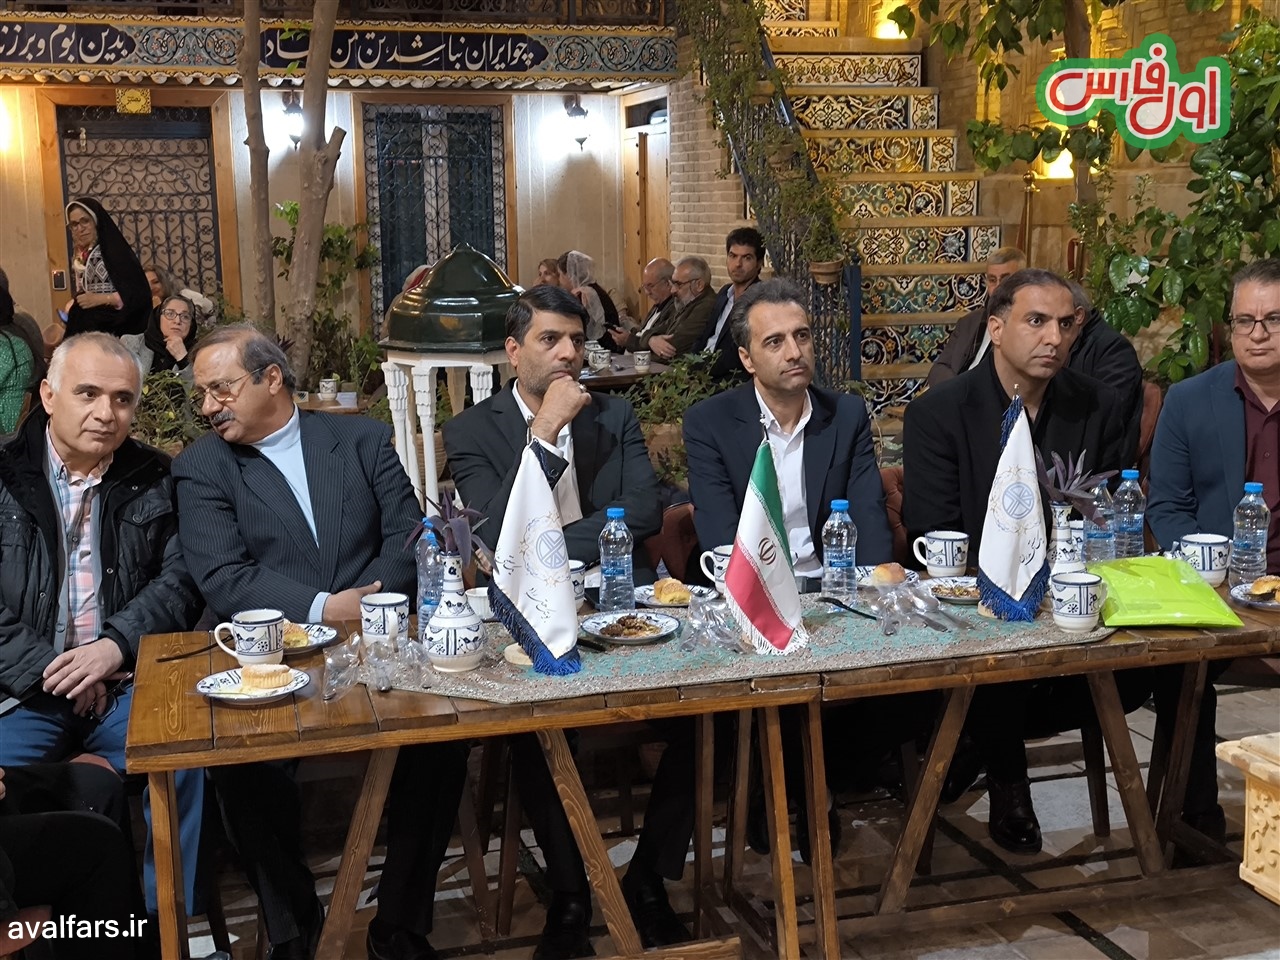 تصاویری از جشن ثبت ملی کلم پلو شیرازی و قهوه شیراز در خانه تاریخی نصیر نظام